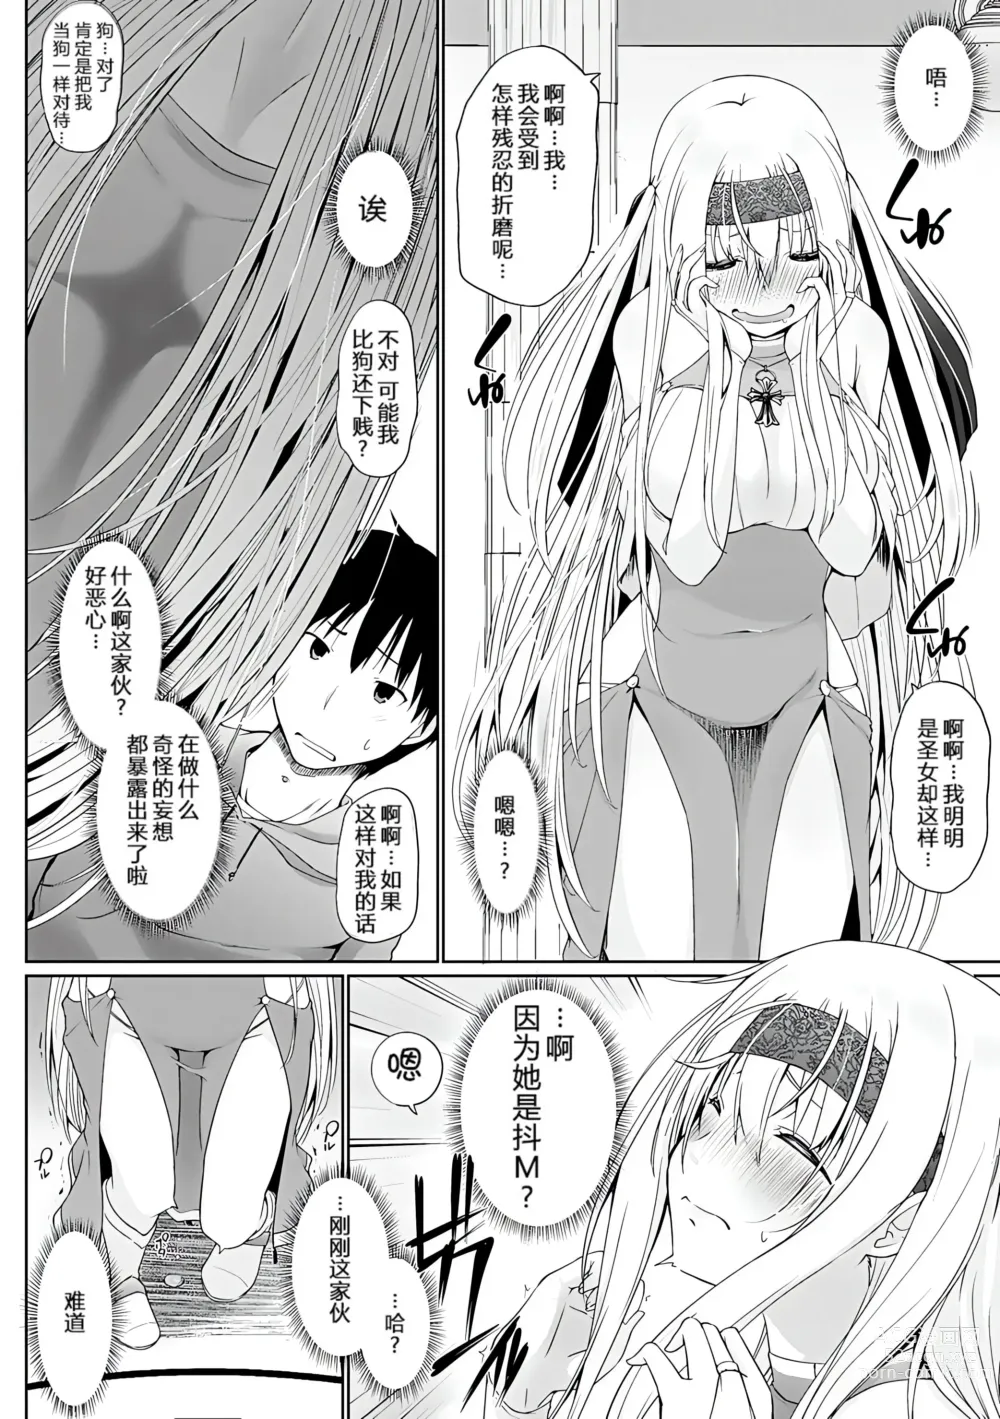 Page 7 of manga Isekai ni Shoukansaretara Zenin Do M Toka...Chotto Imi ga Wakaranai